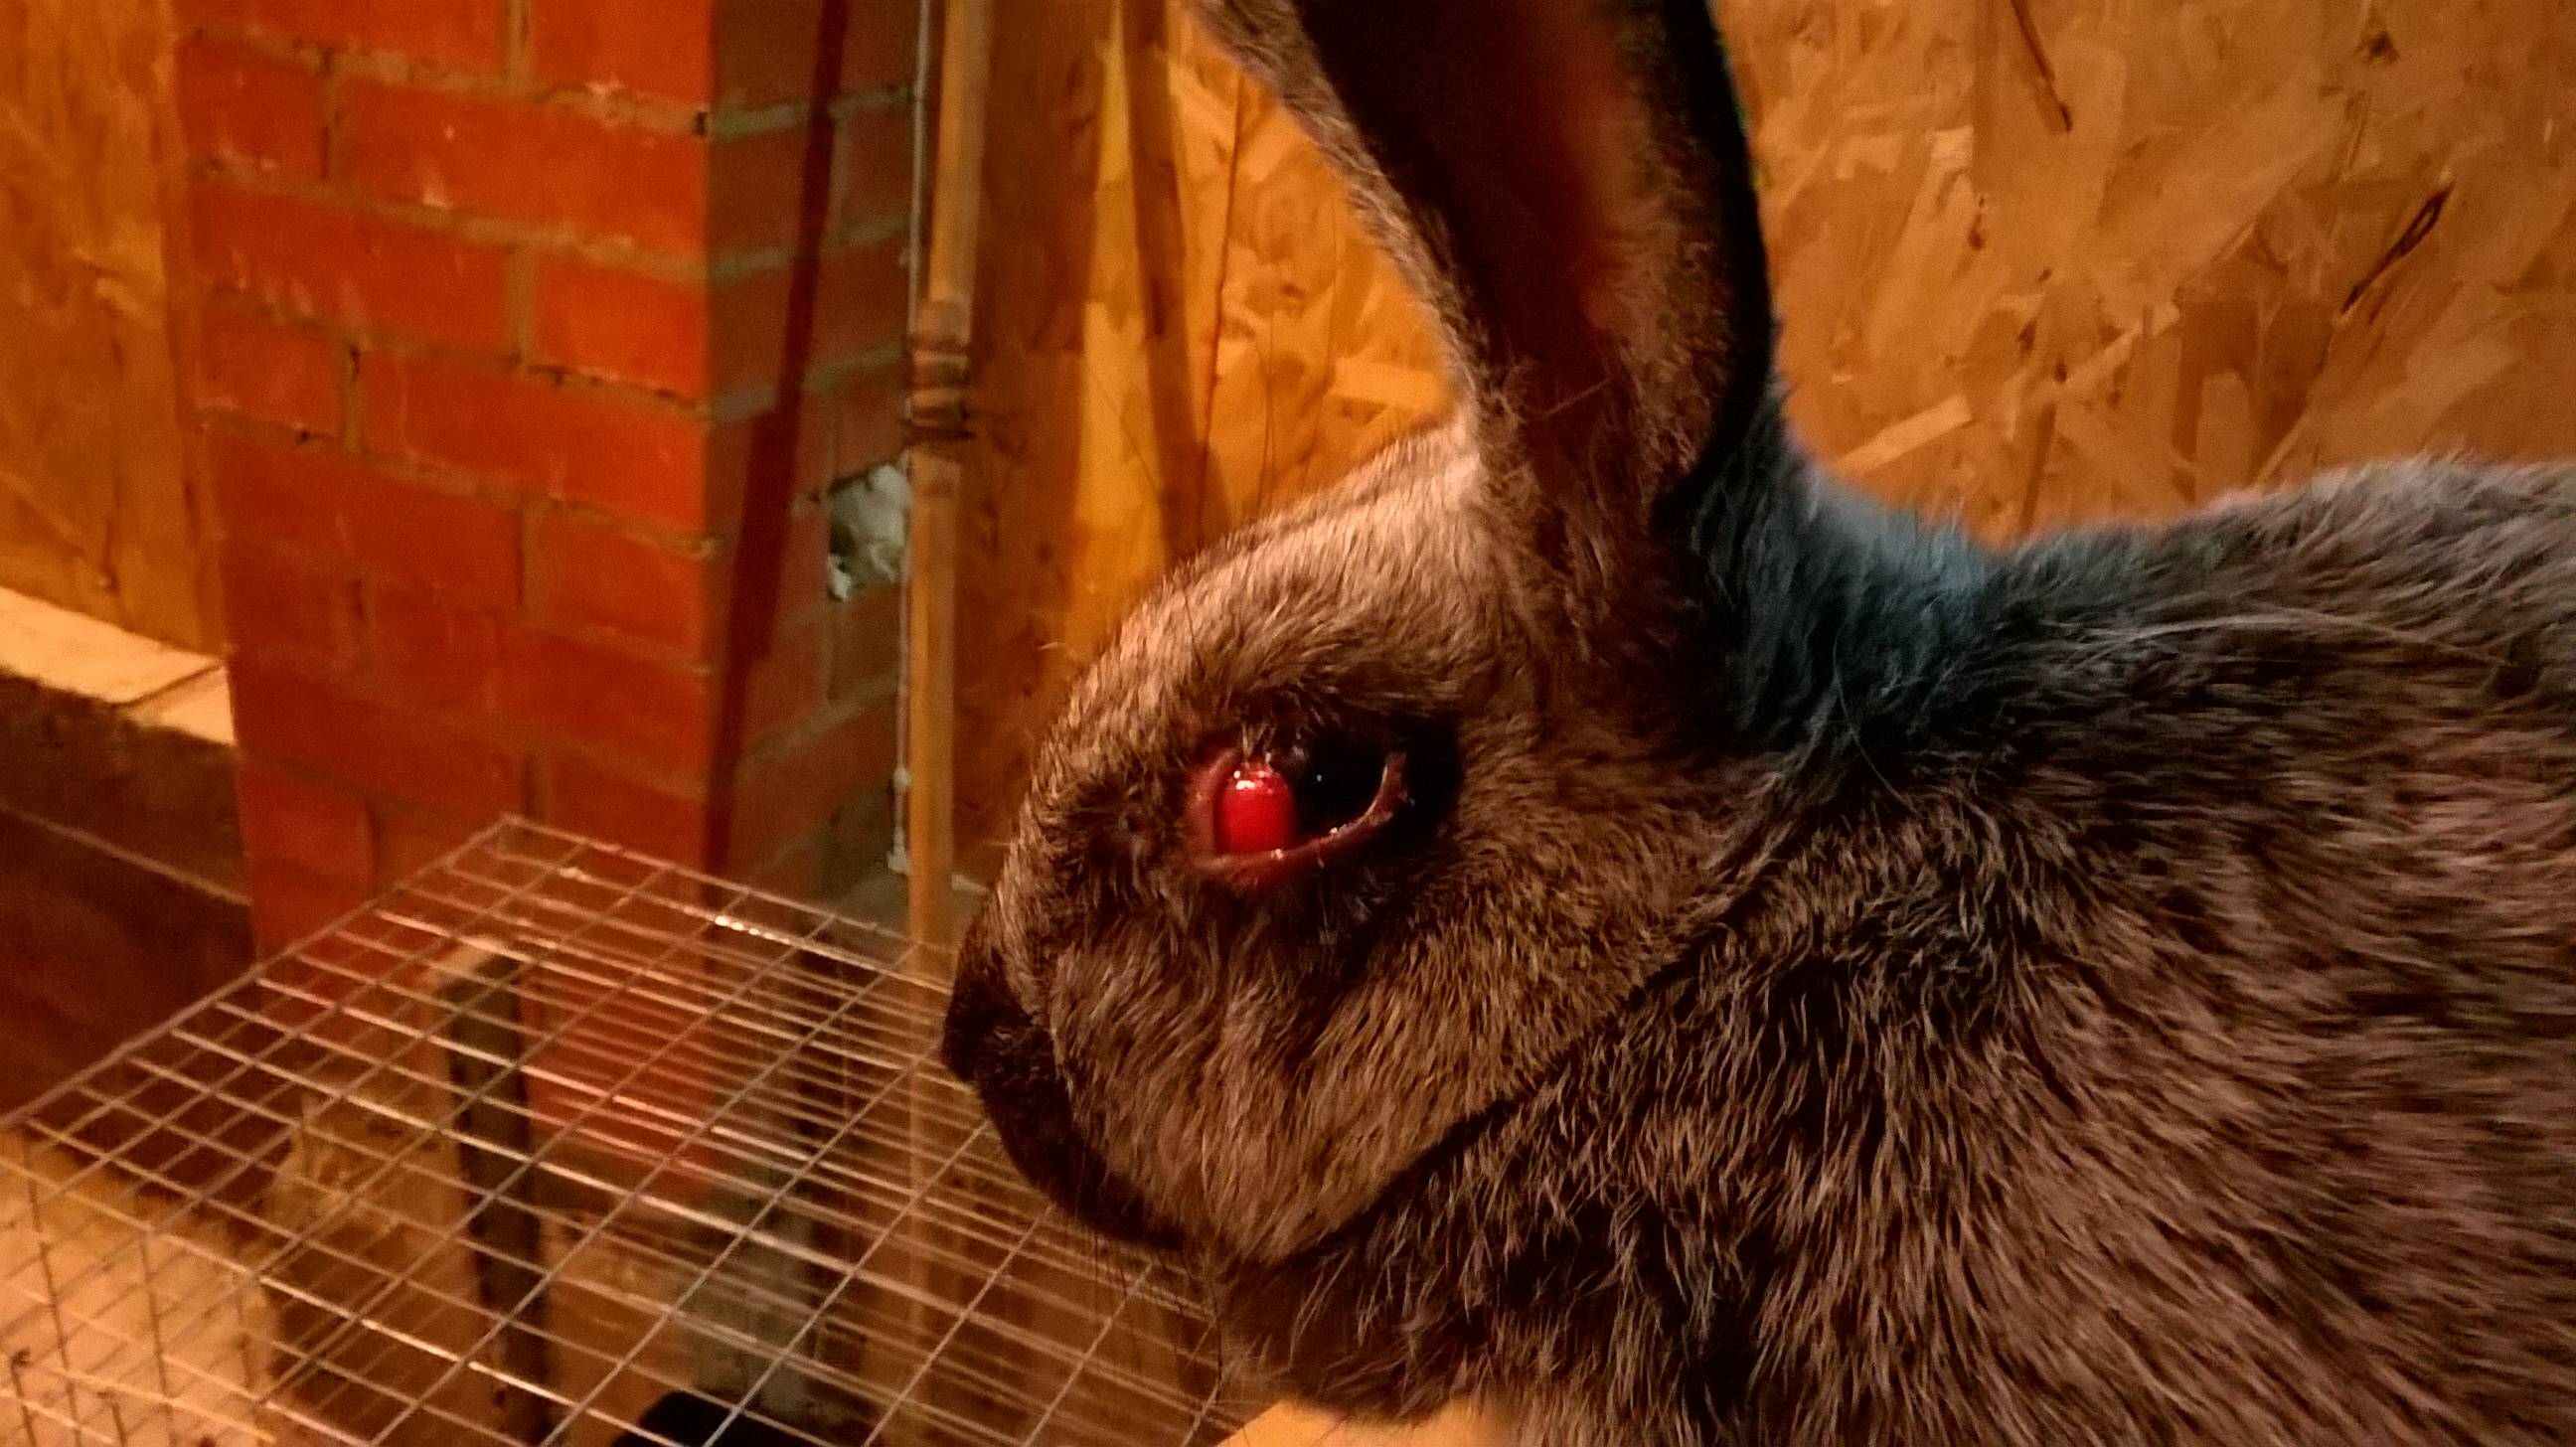 Болезни глаз кроликов: лечение + фото